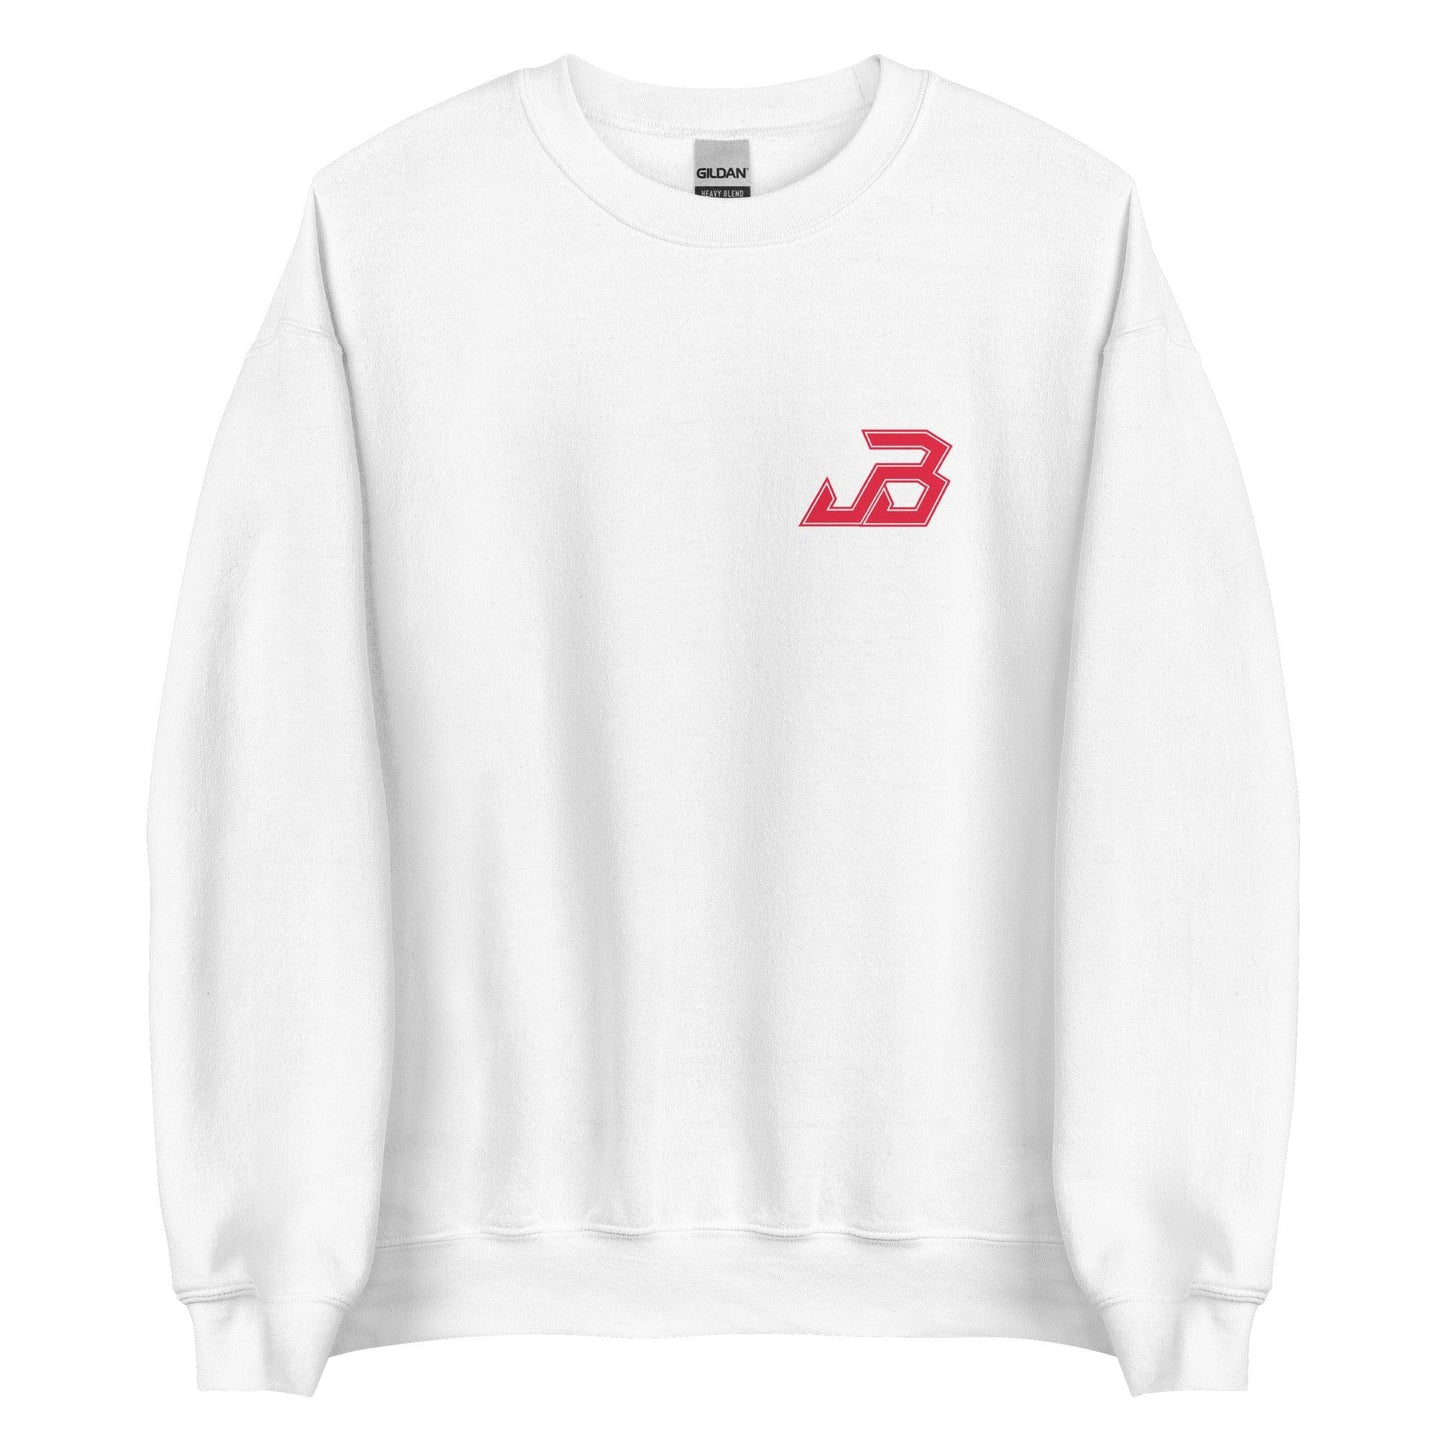 Jake Bunz "Essential" Sweatshirt - Fan Arch